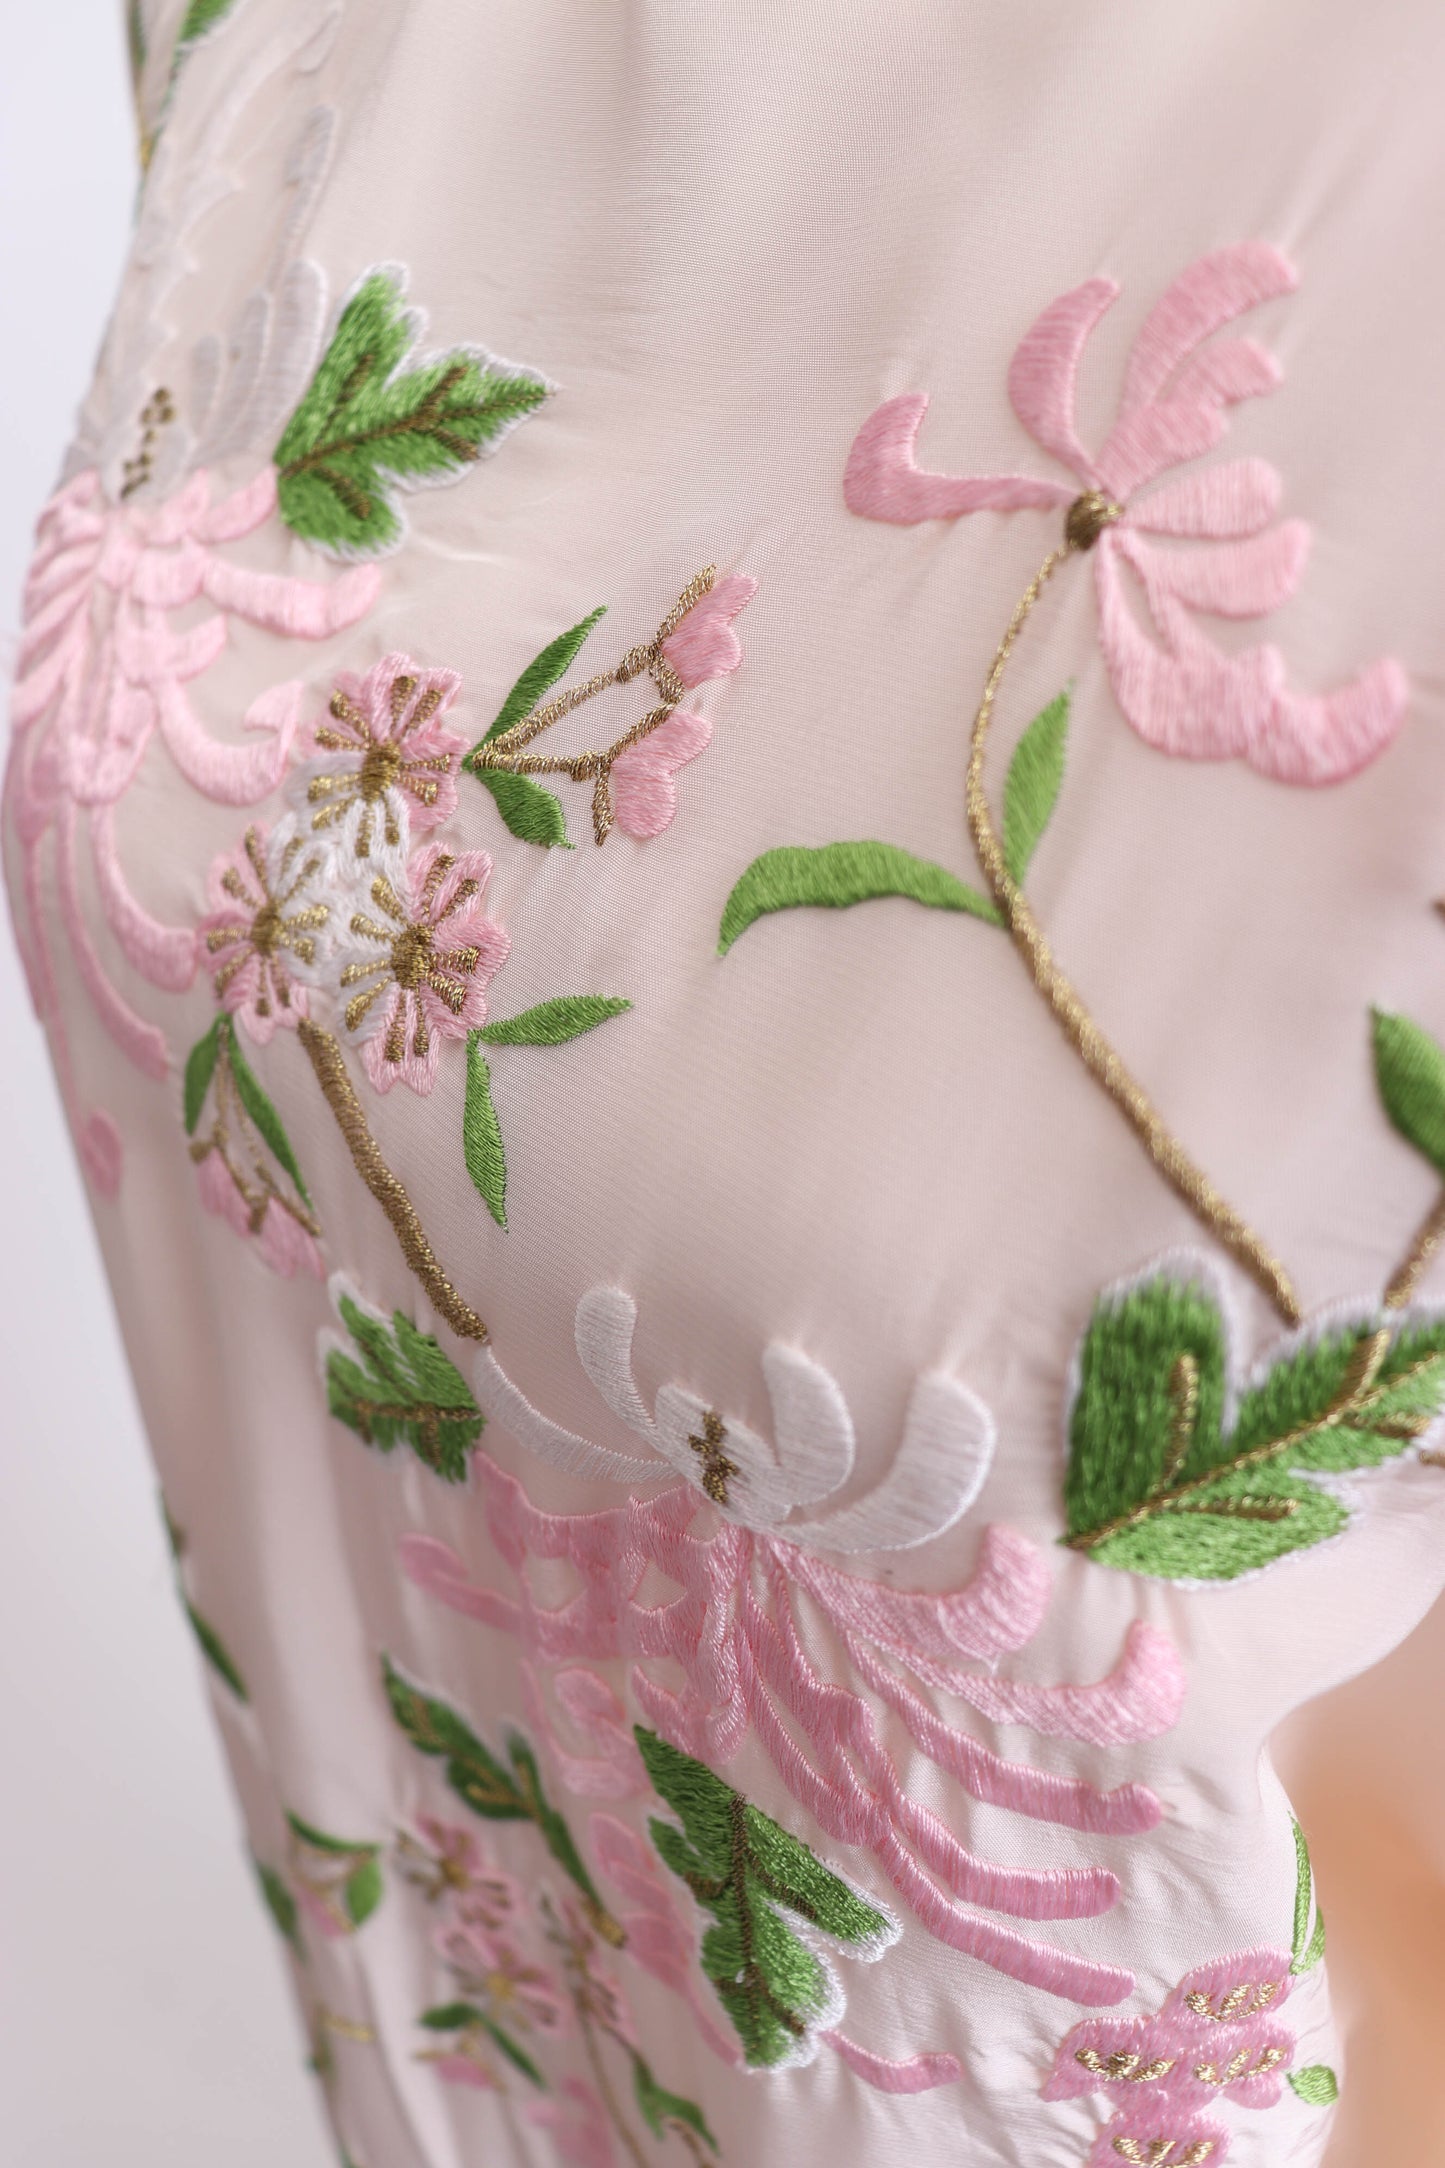 80's Blush Floral Japanese Kimono L/XL